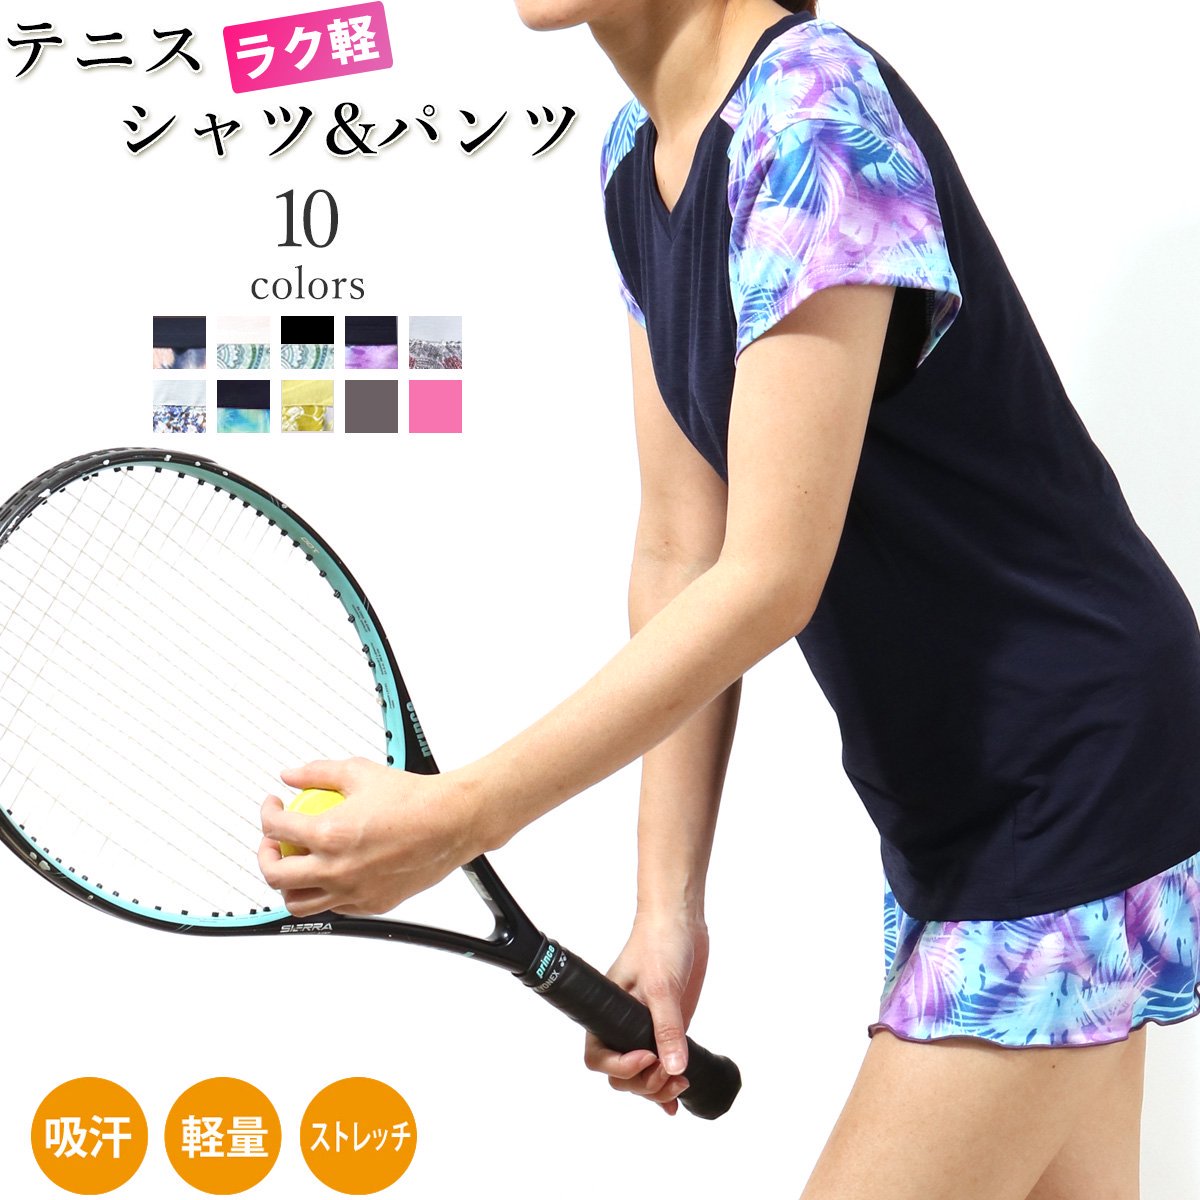 新感覚テニスウェア「ラク軽テニス」 テニスTシャツ キュロット 